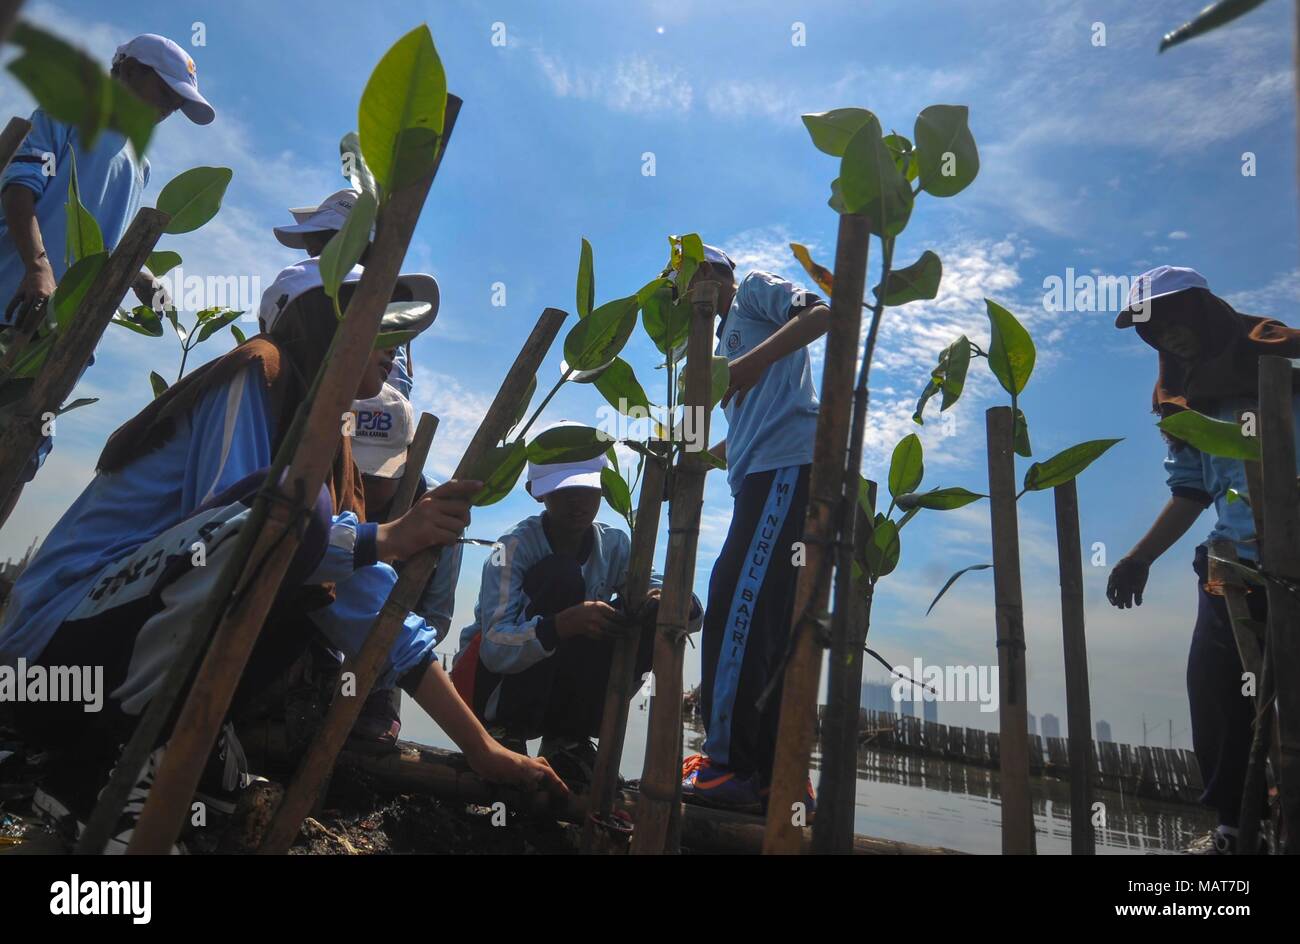 (180404) -- JAKARTA, April 4, 2018 (Xinhua) -- School children plant Mangrove trees at the Gulf coast of Jakarta, Indonesia, April 4, 2018. (Xinhua/Zulkarnain) (zxj) Stock Photo